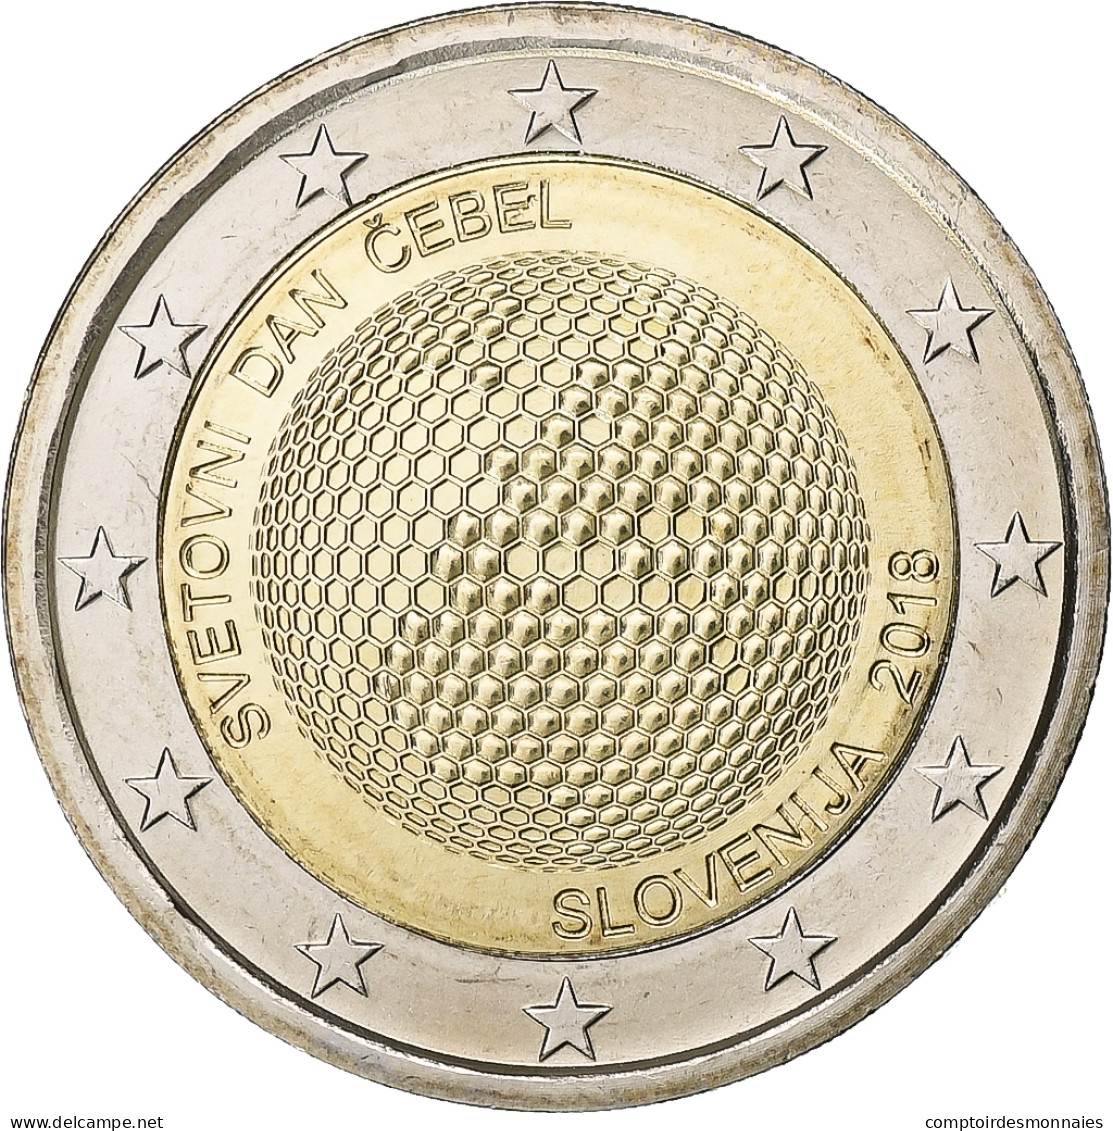 Slovénie, 2 Euro, 2018, Bimétallique, SPL+ - Eslovenia